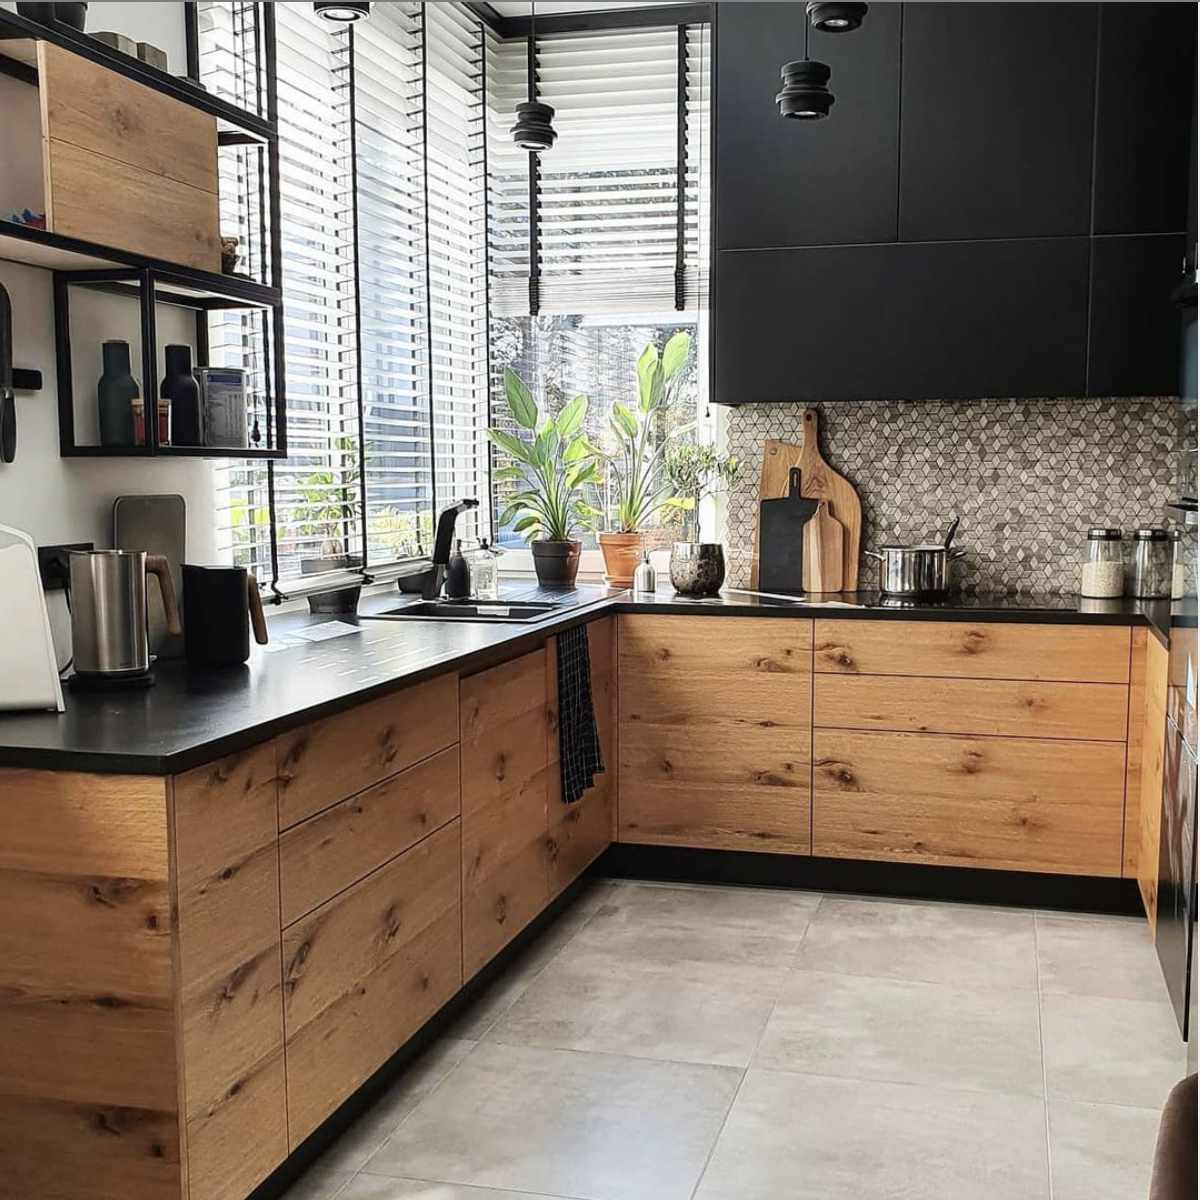 Küche mit Holzunterschränken und schwarzen Oberschränken, hellgrauer großer Fliesenboden, schwarze Accessoires, graue und weiße Rautenfliesen als Aufkantung